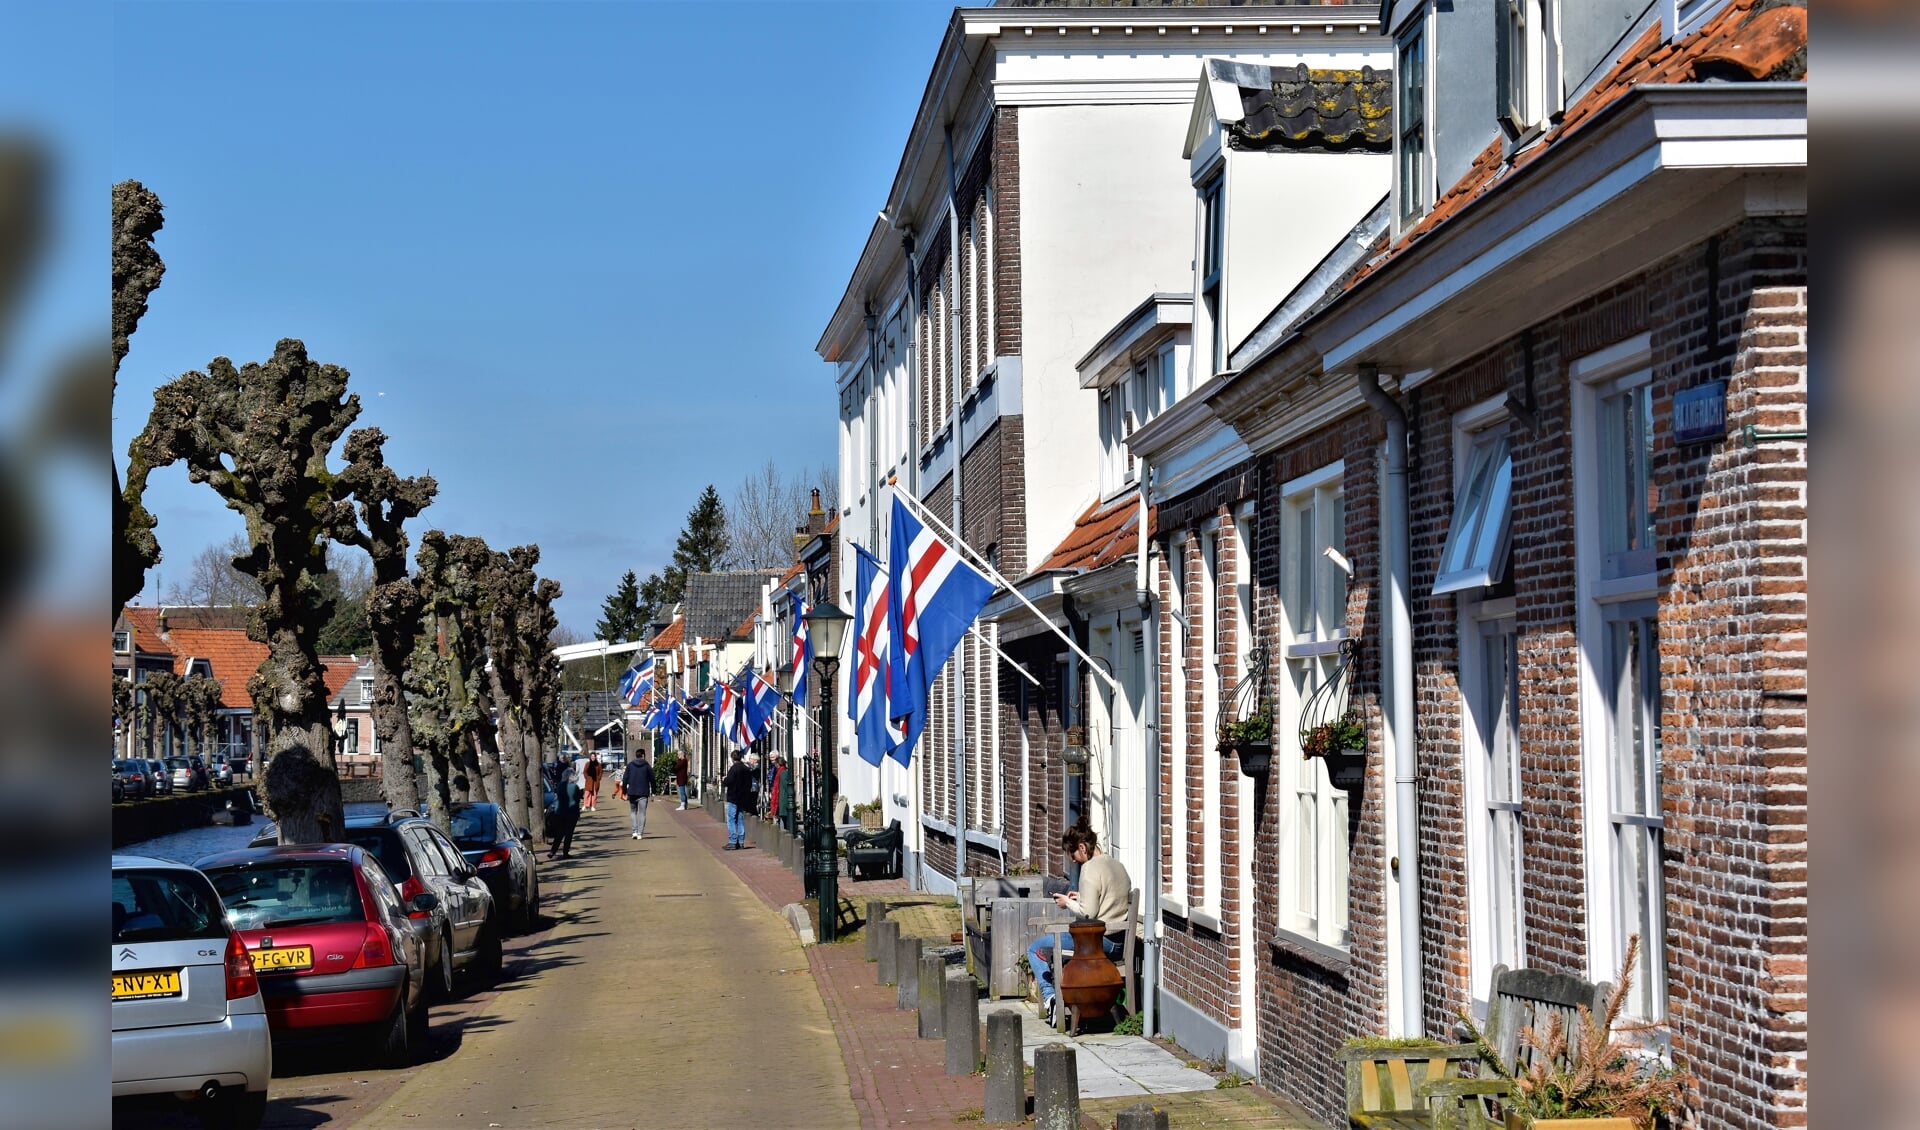 Vorig jaar maart hing de Hasselter vlag aan veel huizen in de Hanzestad.